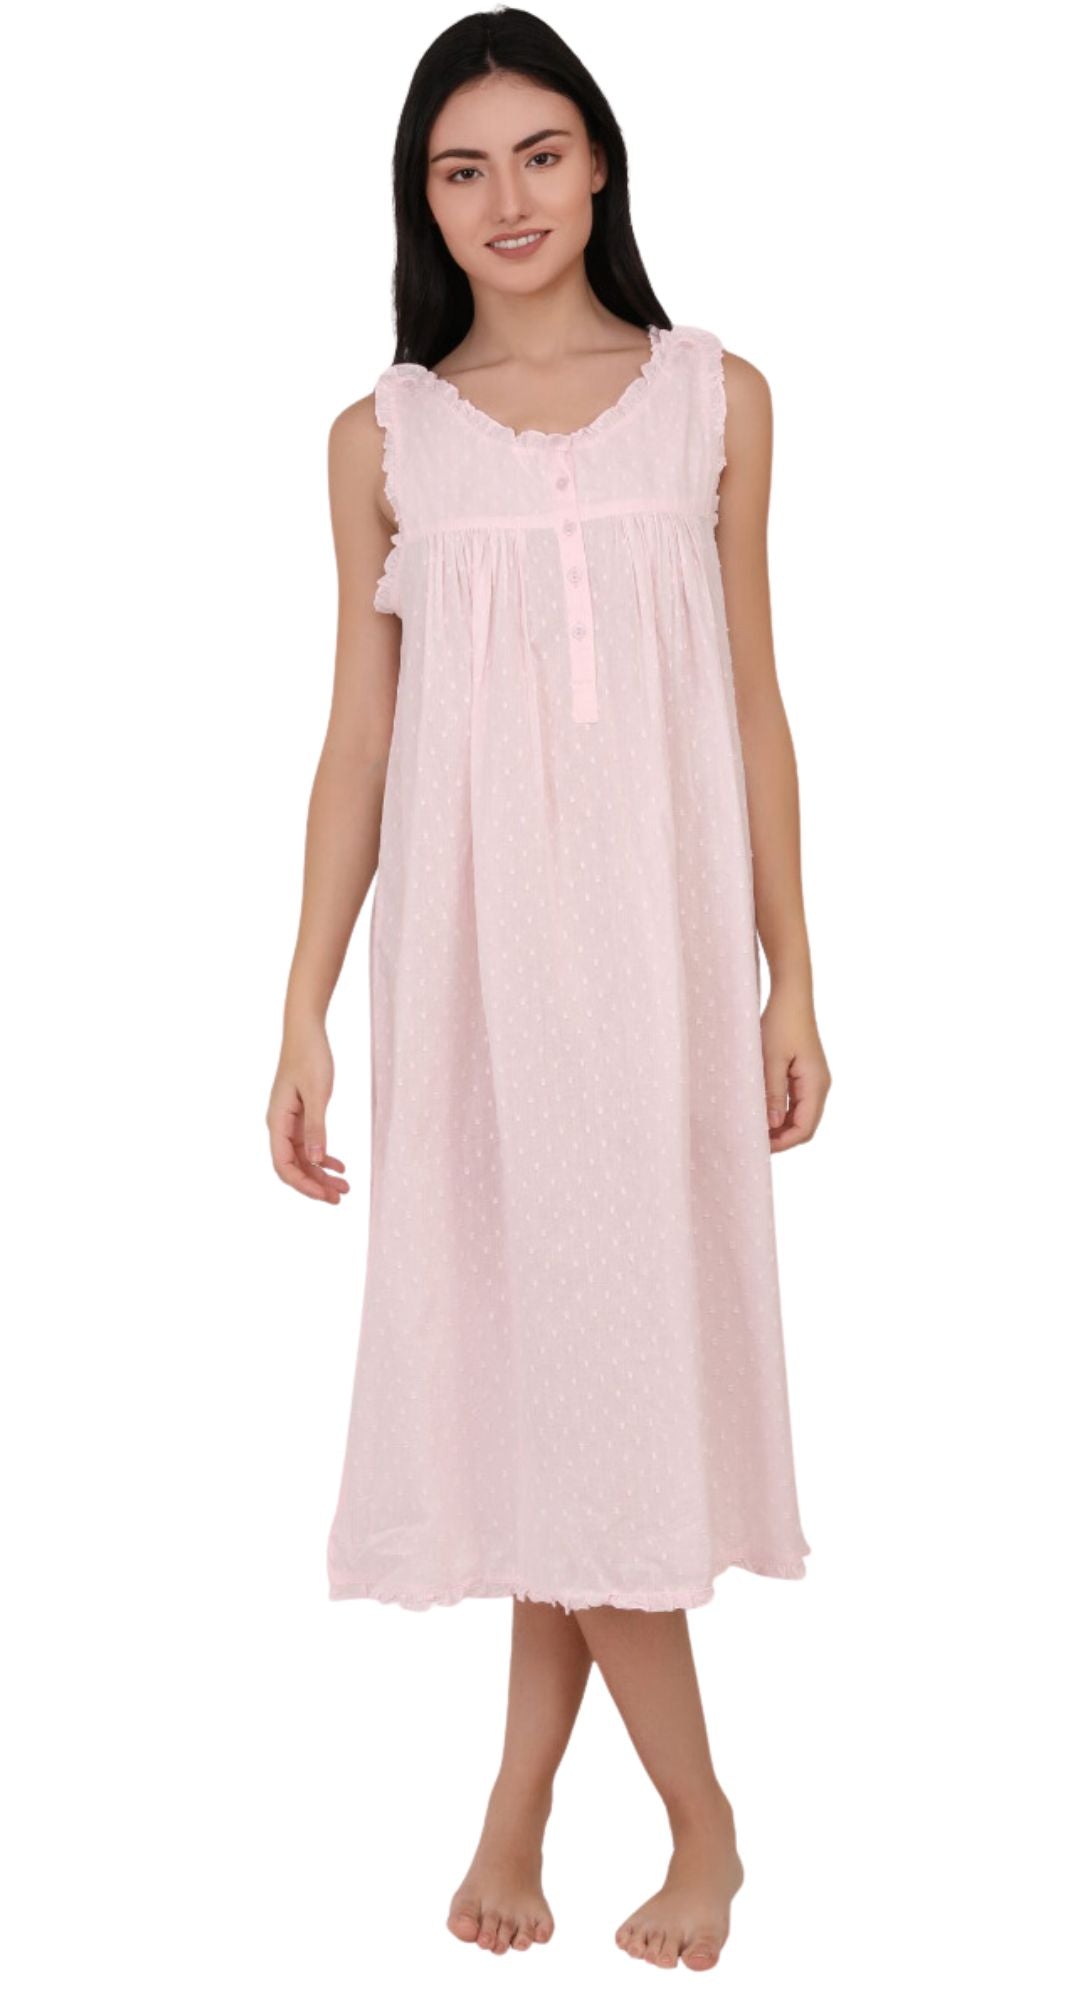 Mimi Pink Cotton Nightie with Button Shoulder